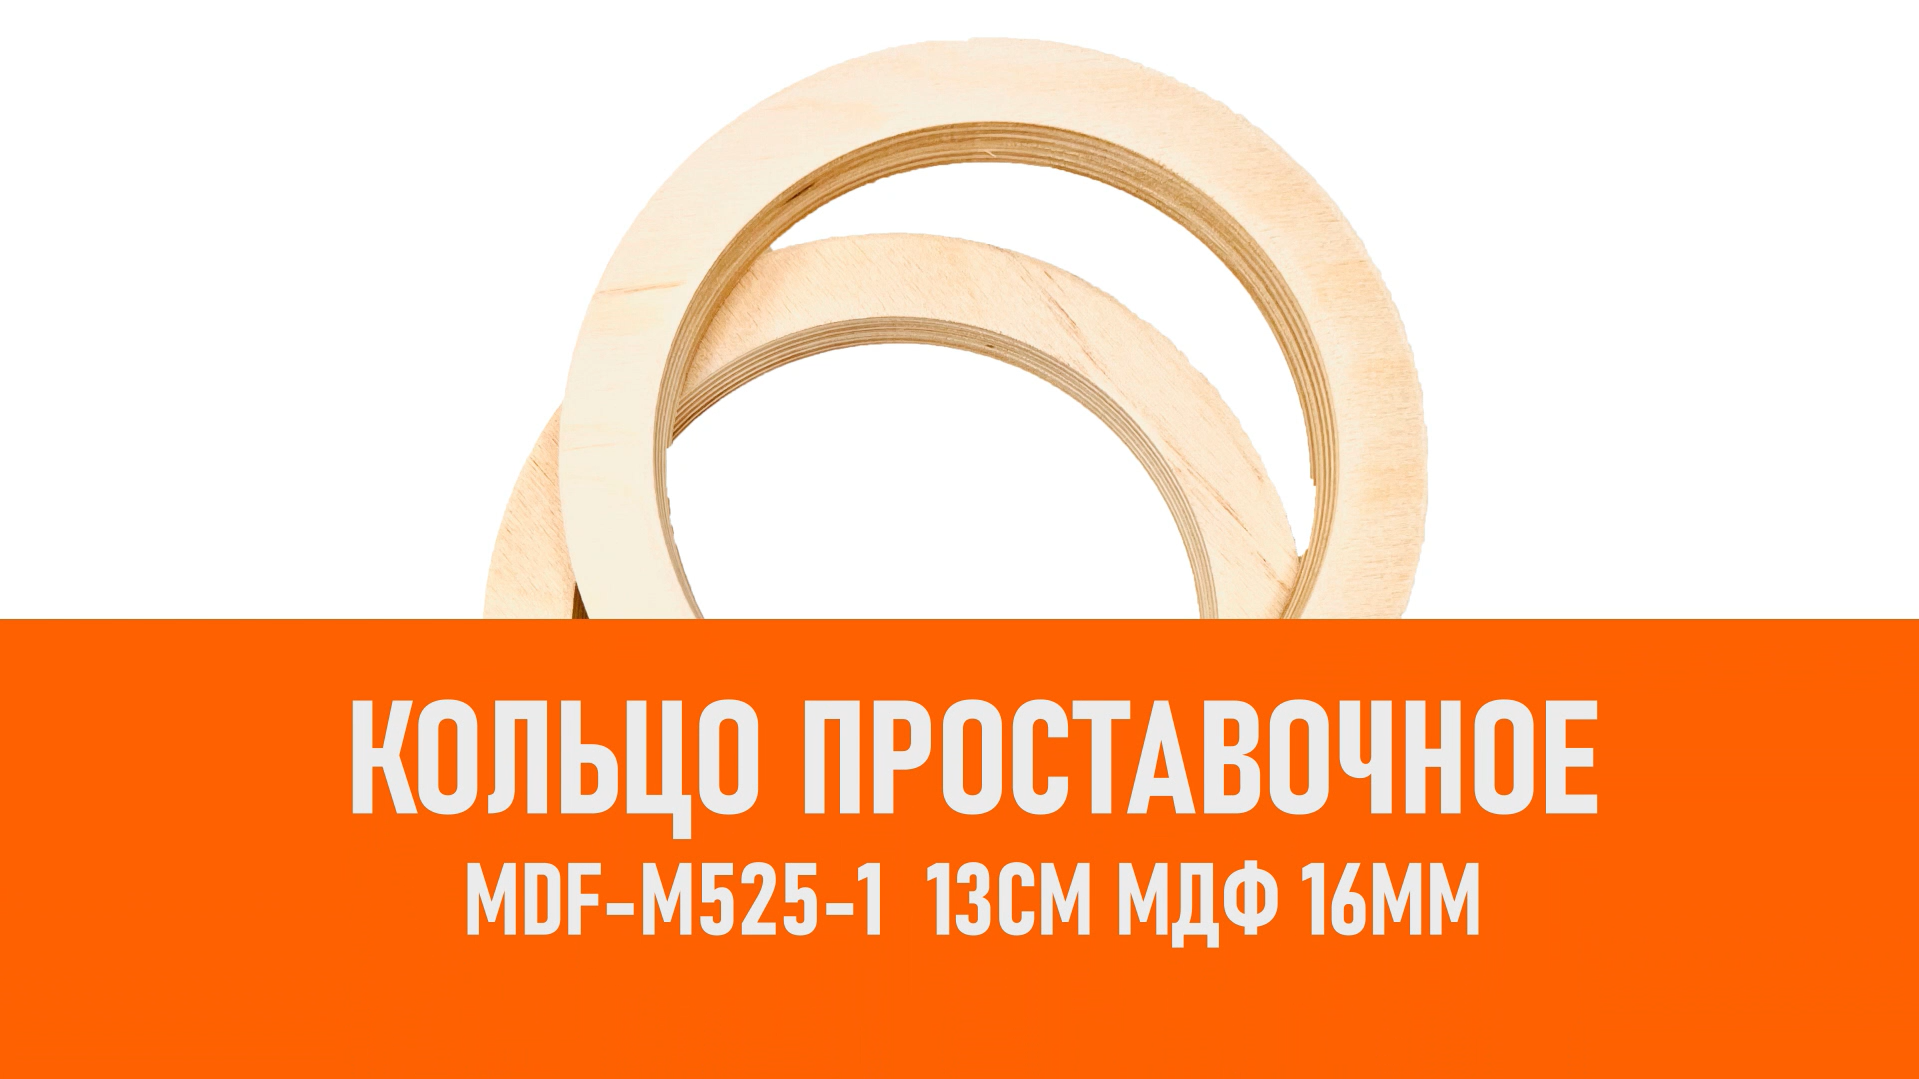 Распаковка MDF-M525-1 Кольцо проставочное 13см МДФ 16мм